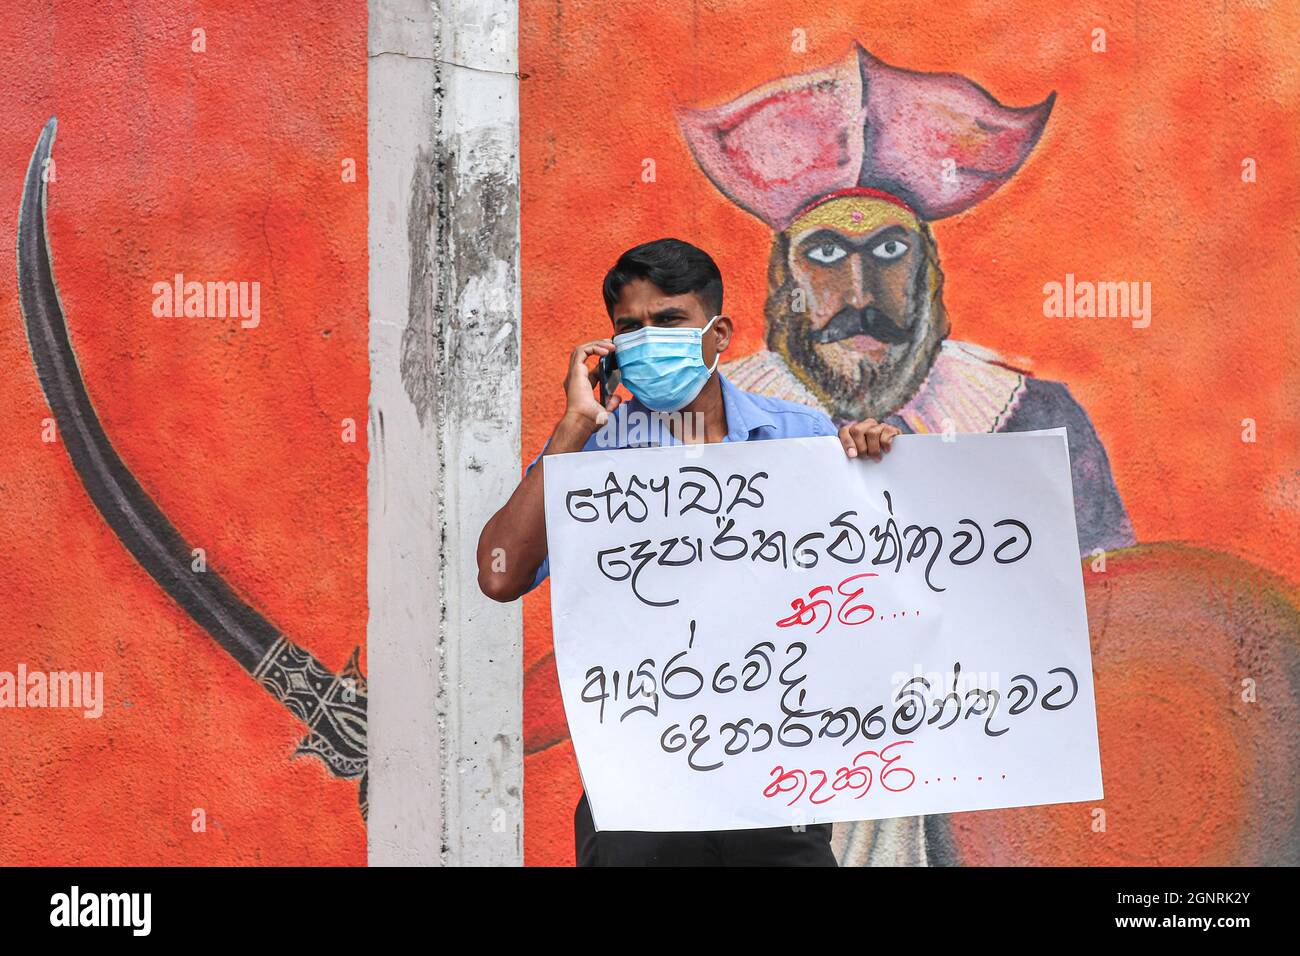 Colombo, Sri Lanka. September 2021. Frontarbeiter des Hauptkrankenhauses  für Ayurveda (Indigene Medizin) in Colombo protestieren vor ihrem  Krankenhaus und fordern die Zahlung einer speziellen Covid-19-Gebühr von  RS. 7,500, am 27. September 2021. (